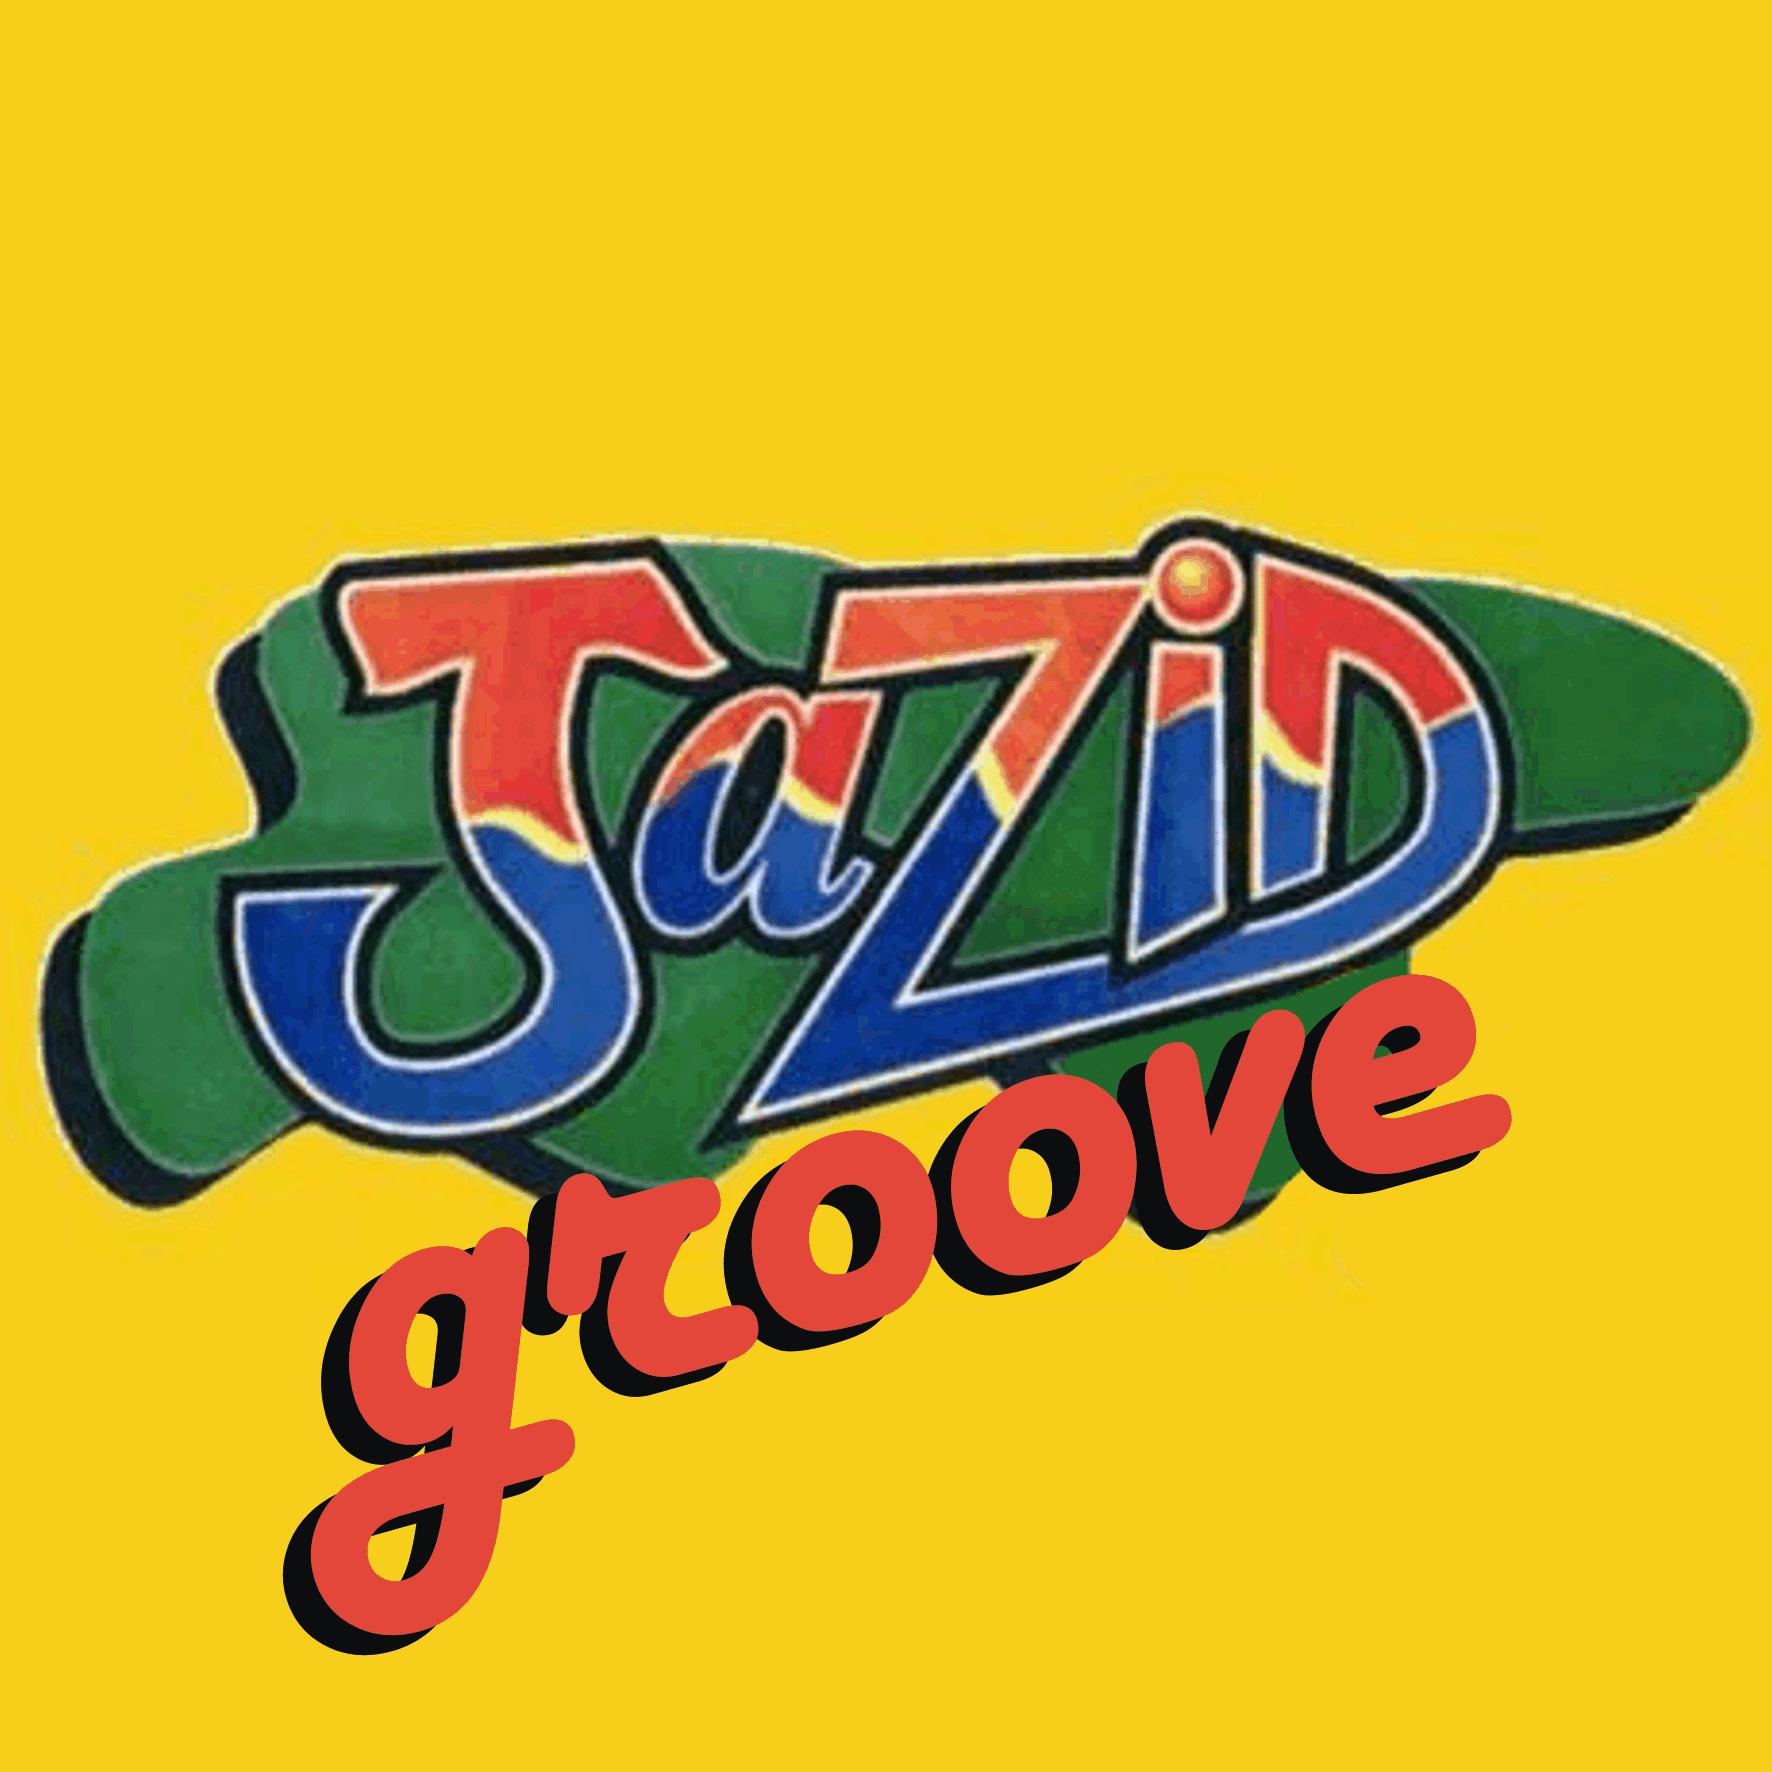 Jazid Groove 42